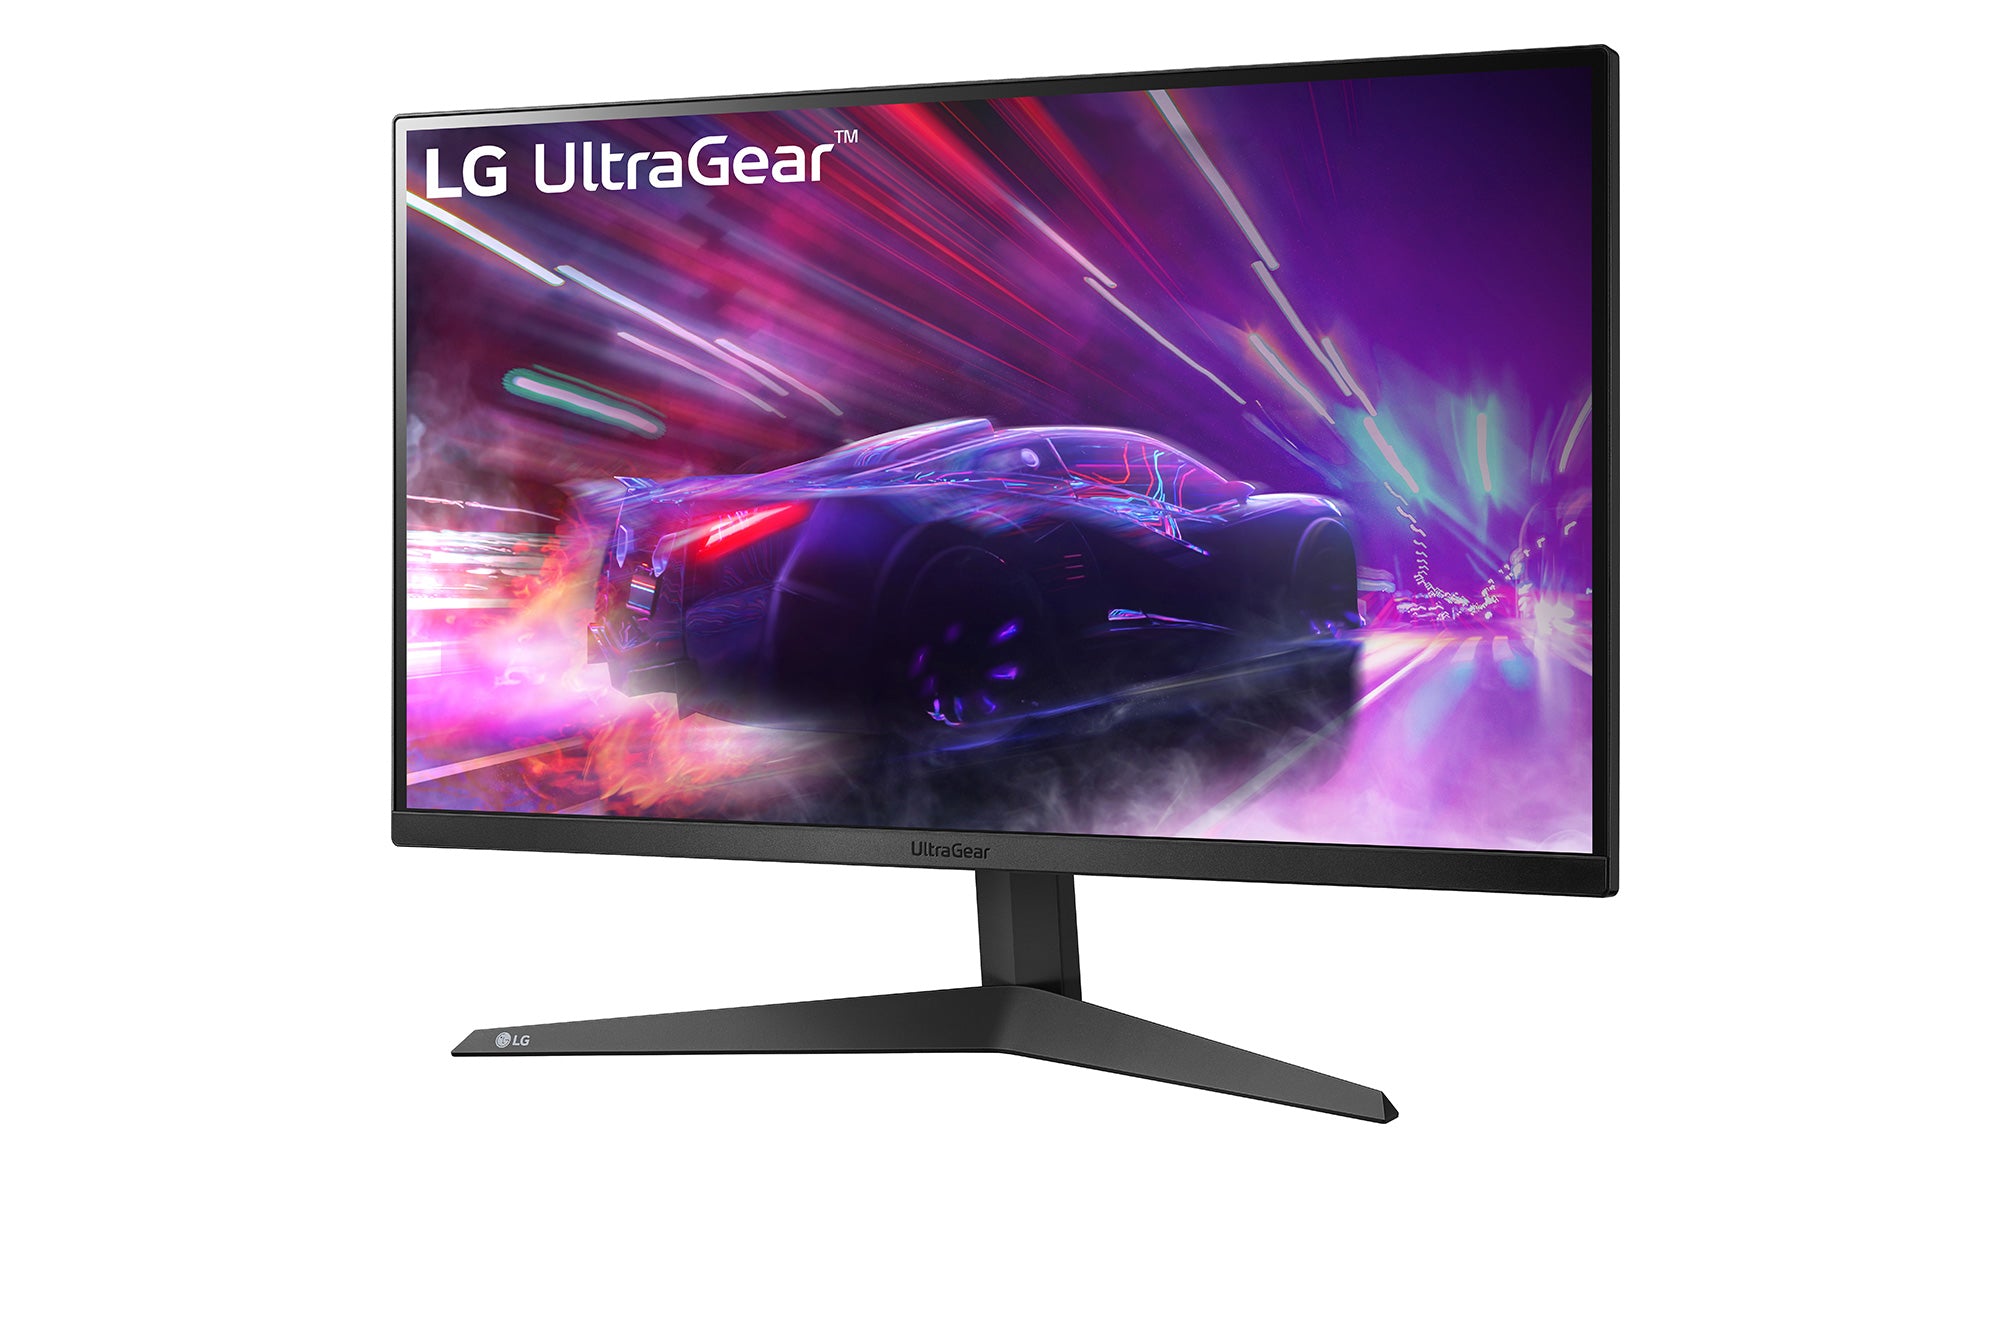 LG 27GQ50F UltraGear Monitor / 27 inch / 1920 x 1080 Resolution / AMD FreeSync Premium / Dynamic Action Sync / Black Stabilizer